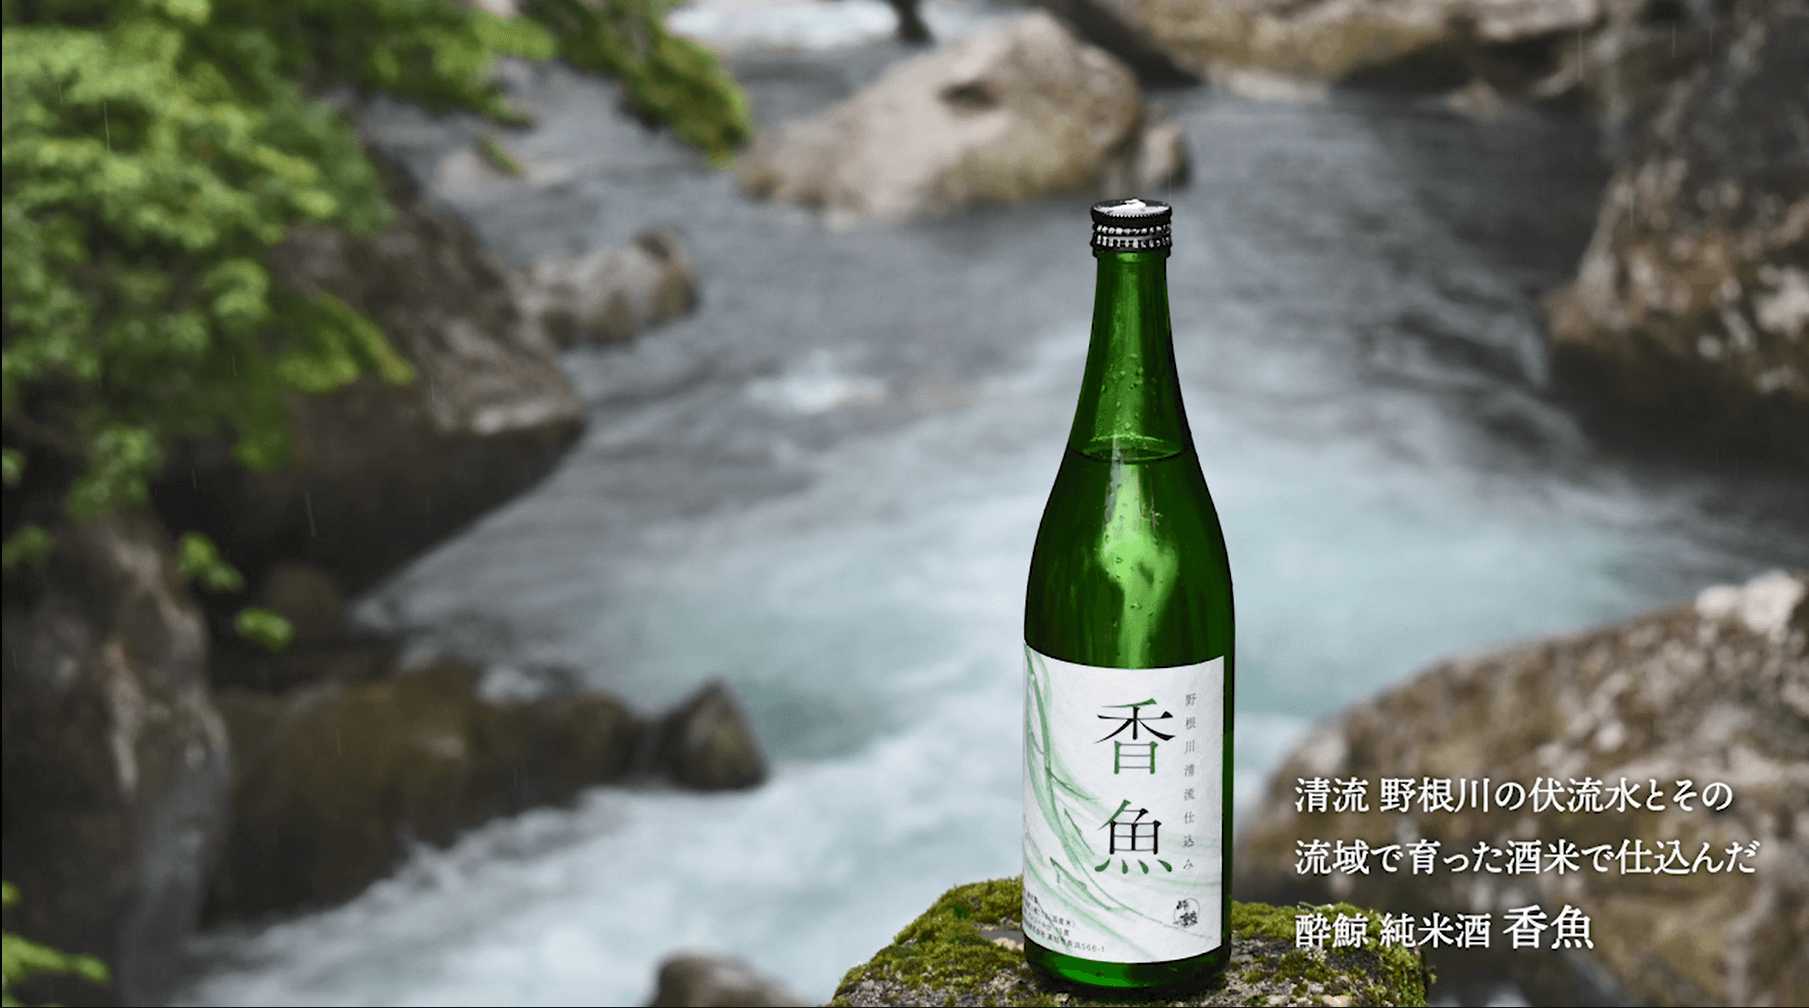 「純米酒 香魚」のふるさと深碧の清流 野根川の映像をお届けします。